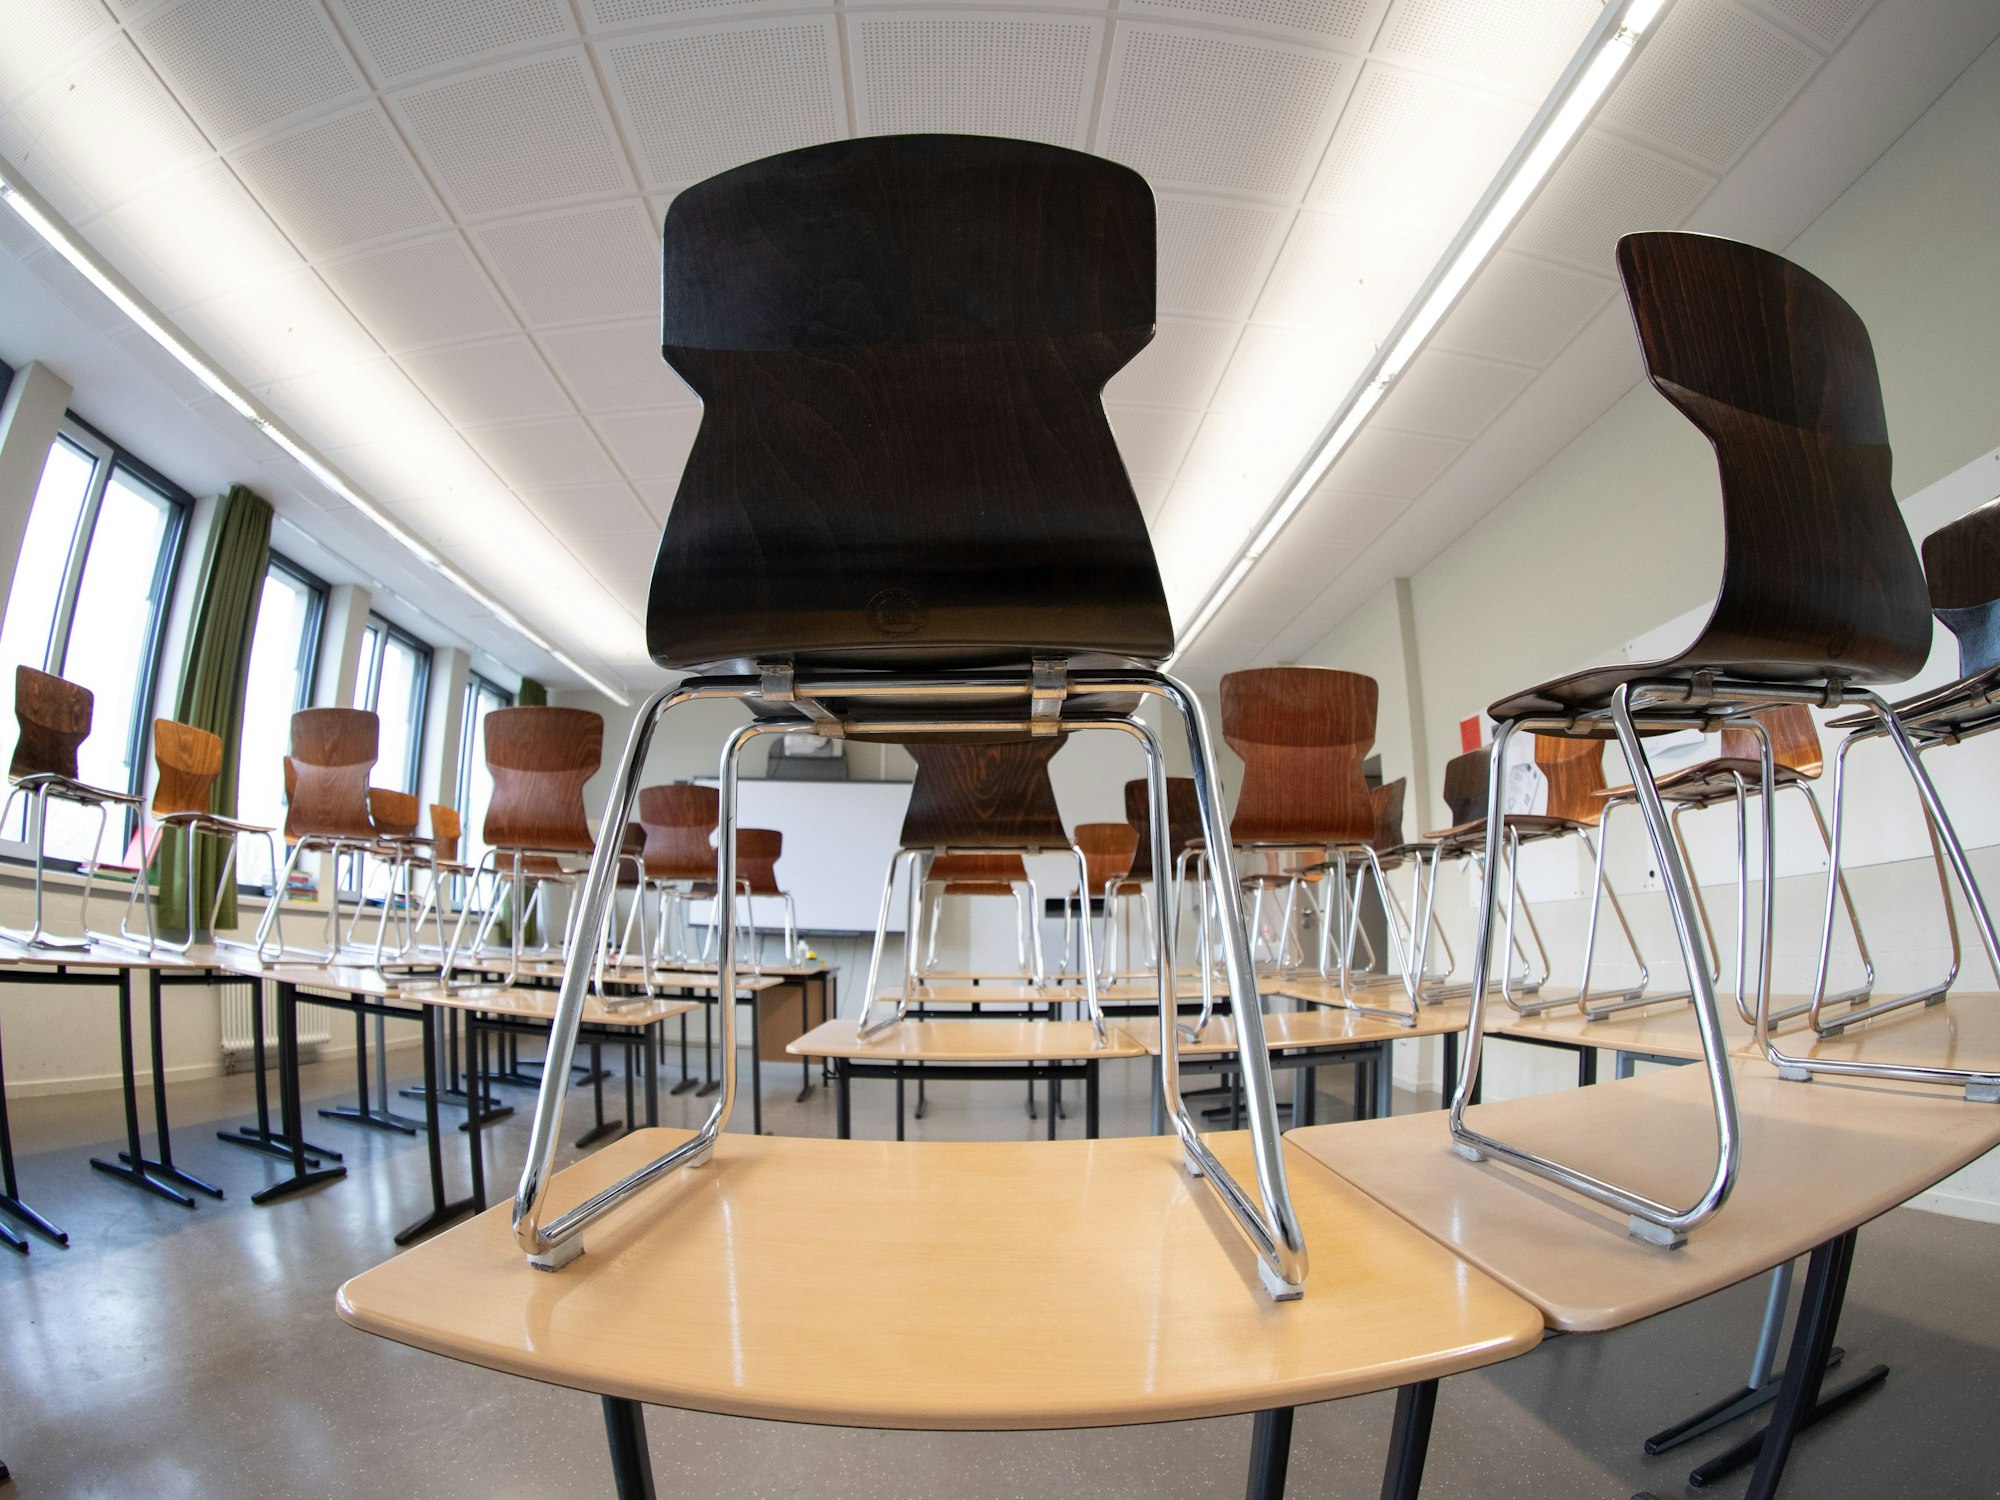 Stühle stehen auf den Tischen in einem Klassenzimmer vom Max-Planck-Gymnasium.